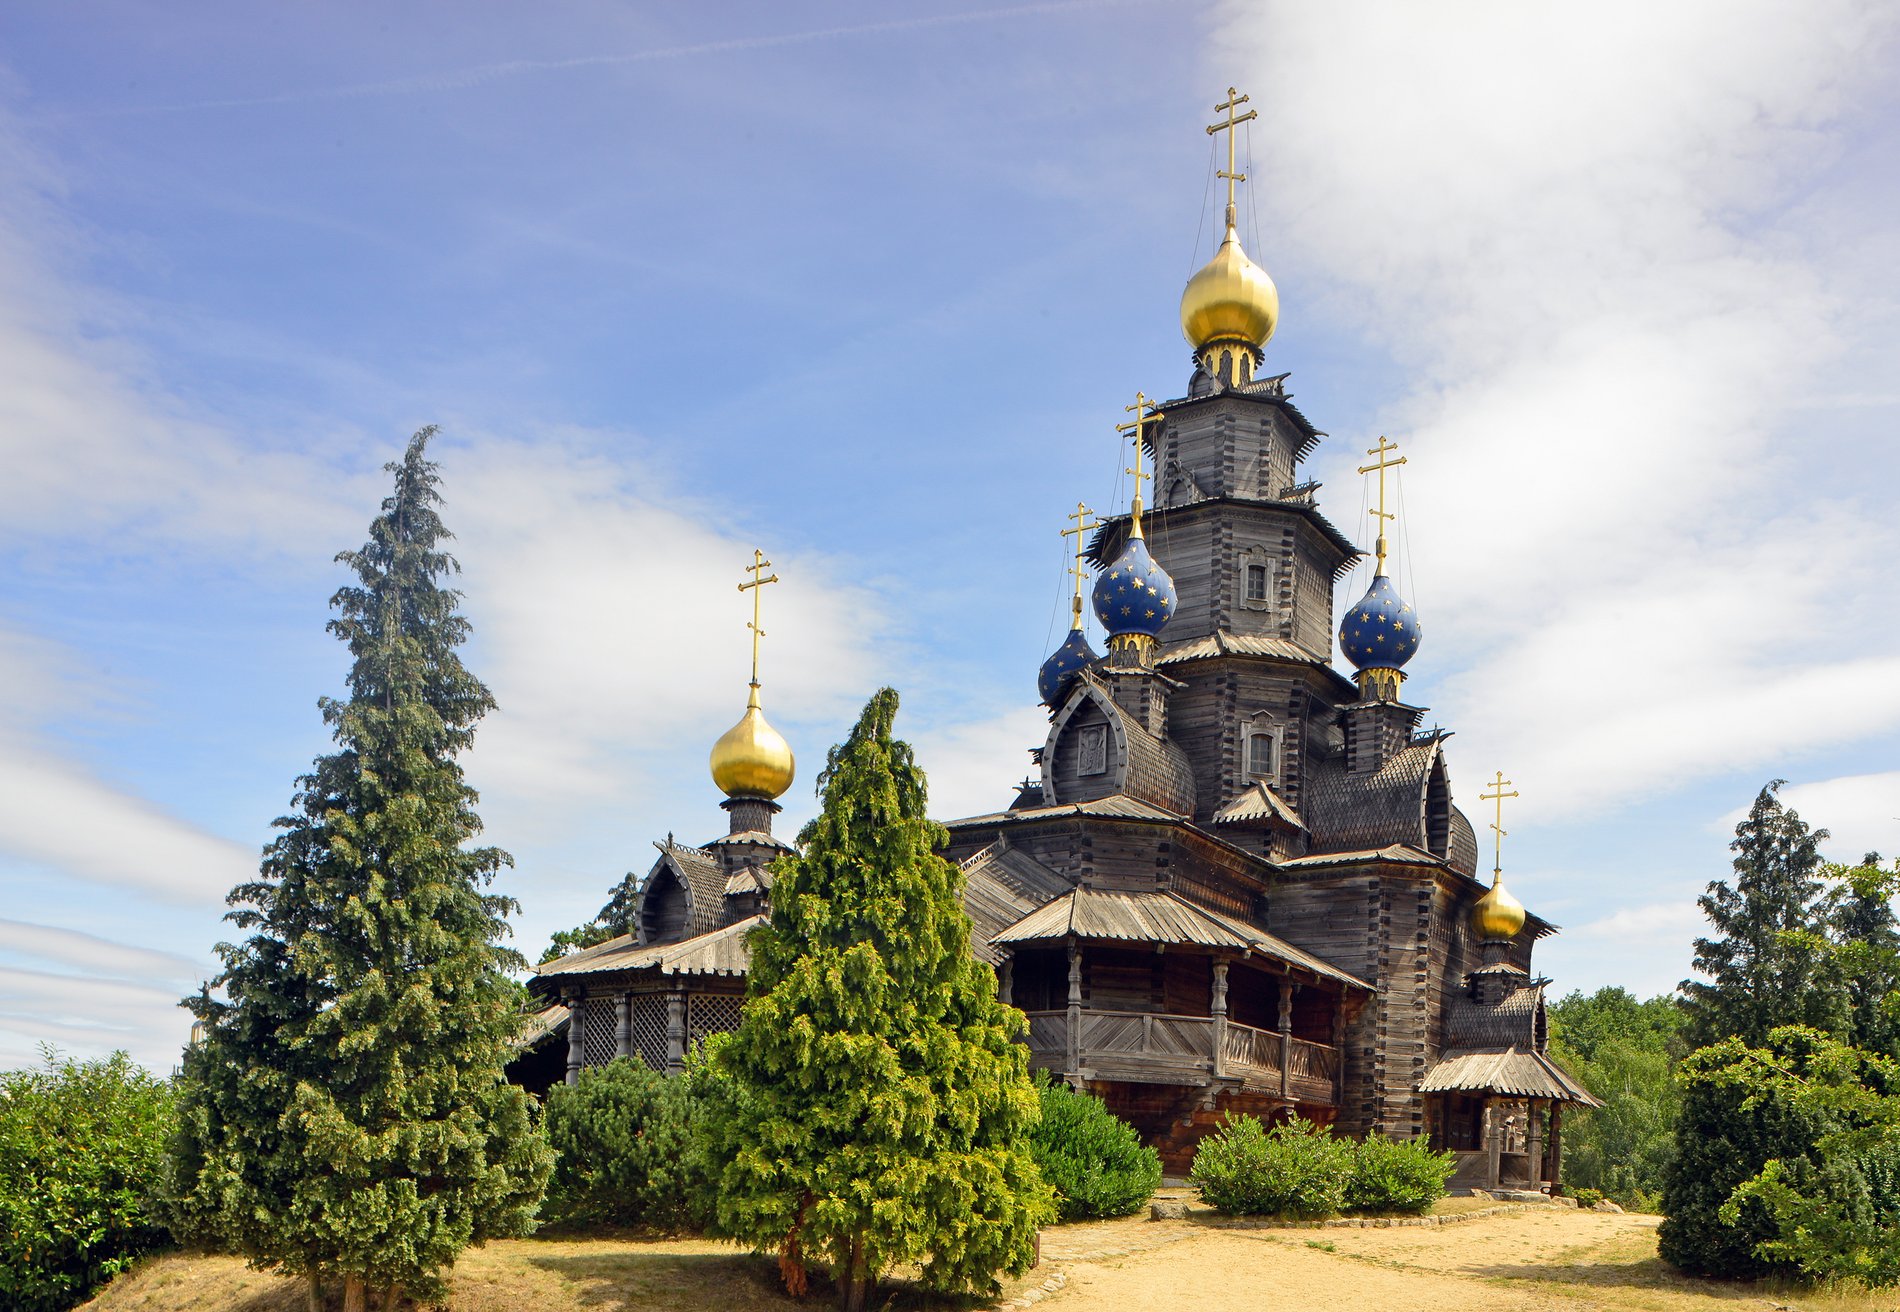 Man blickt auf die russisch-orthodoxe Kirche im Mühlenmuseum Gifhorn